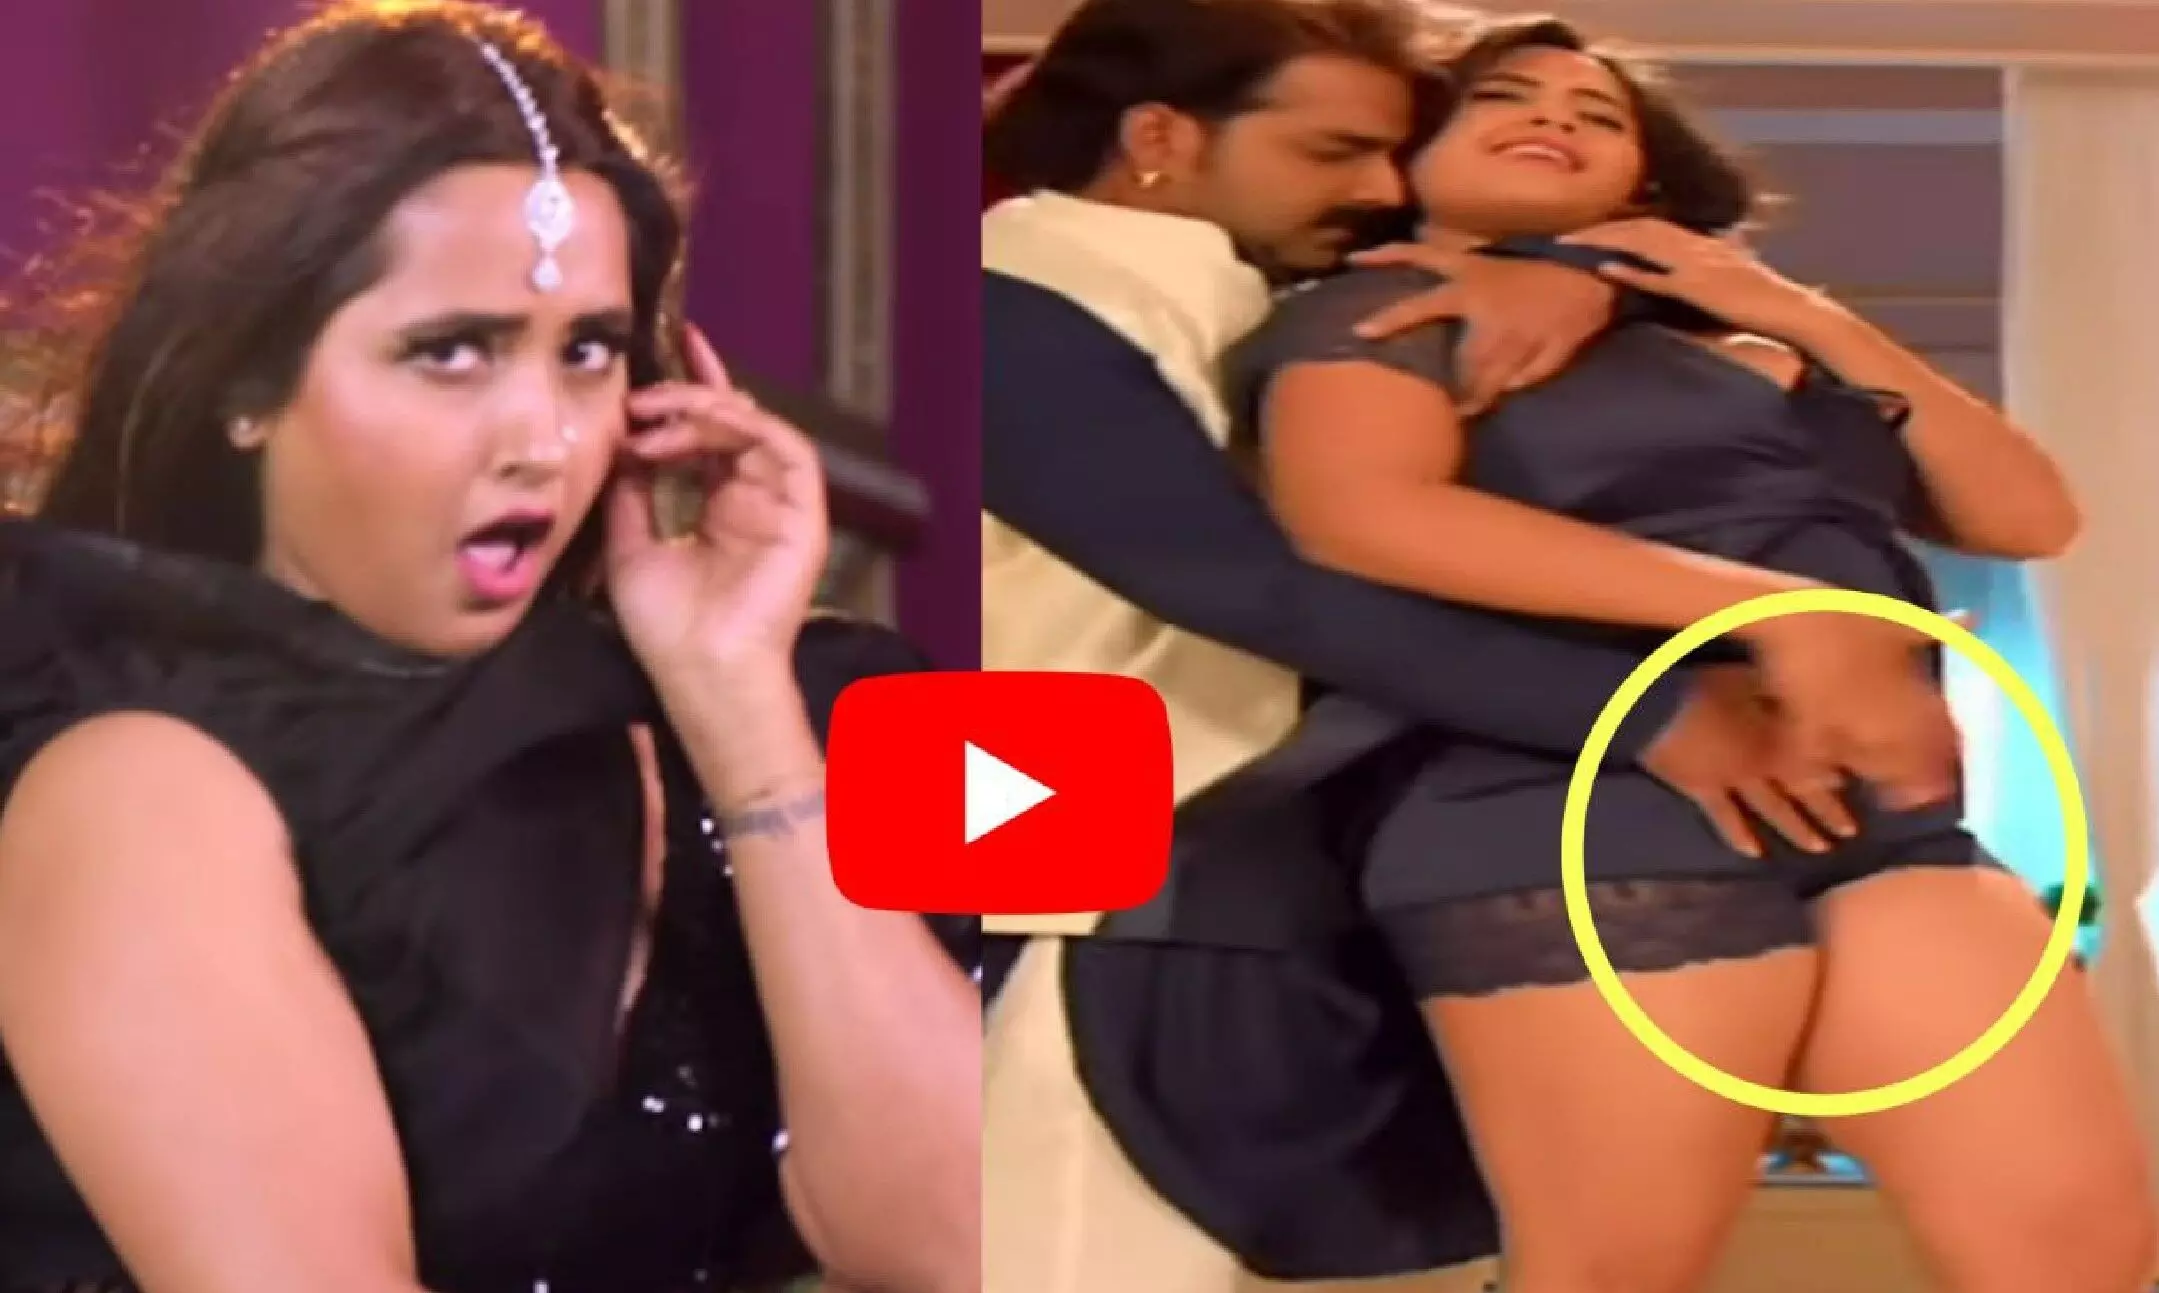 Hottest Actress Kajal Laghwani Sex Video - Kajal Raghwani HOT Video: à¤•à¤¾à¤œà¤² à¤°à¤¾à¤˜à¤µà¤¾à¤¨à¥€ à¤•à¤¾ à¤¹à¥‰à¤Ÿ à¤µà¥€à¤¡à¤¿à¤¯à¥‹ à¤¦à¥‡à¤– à¤¦à¥€à¤µà¤¾à¤¨à¥‡ à¤¹à¥‹ à¤—à¤ à¤«à¥ˆà¤¨à¥à¤¸  | Kajal Raghwani HOT Video: Fans went crazy after watching Kajal Raghwani's hot  video